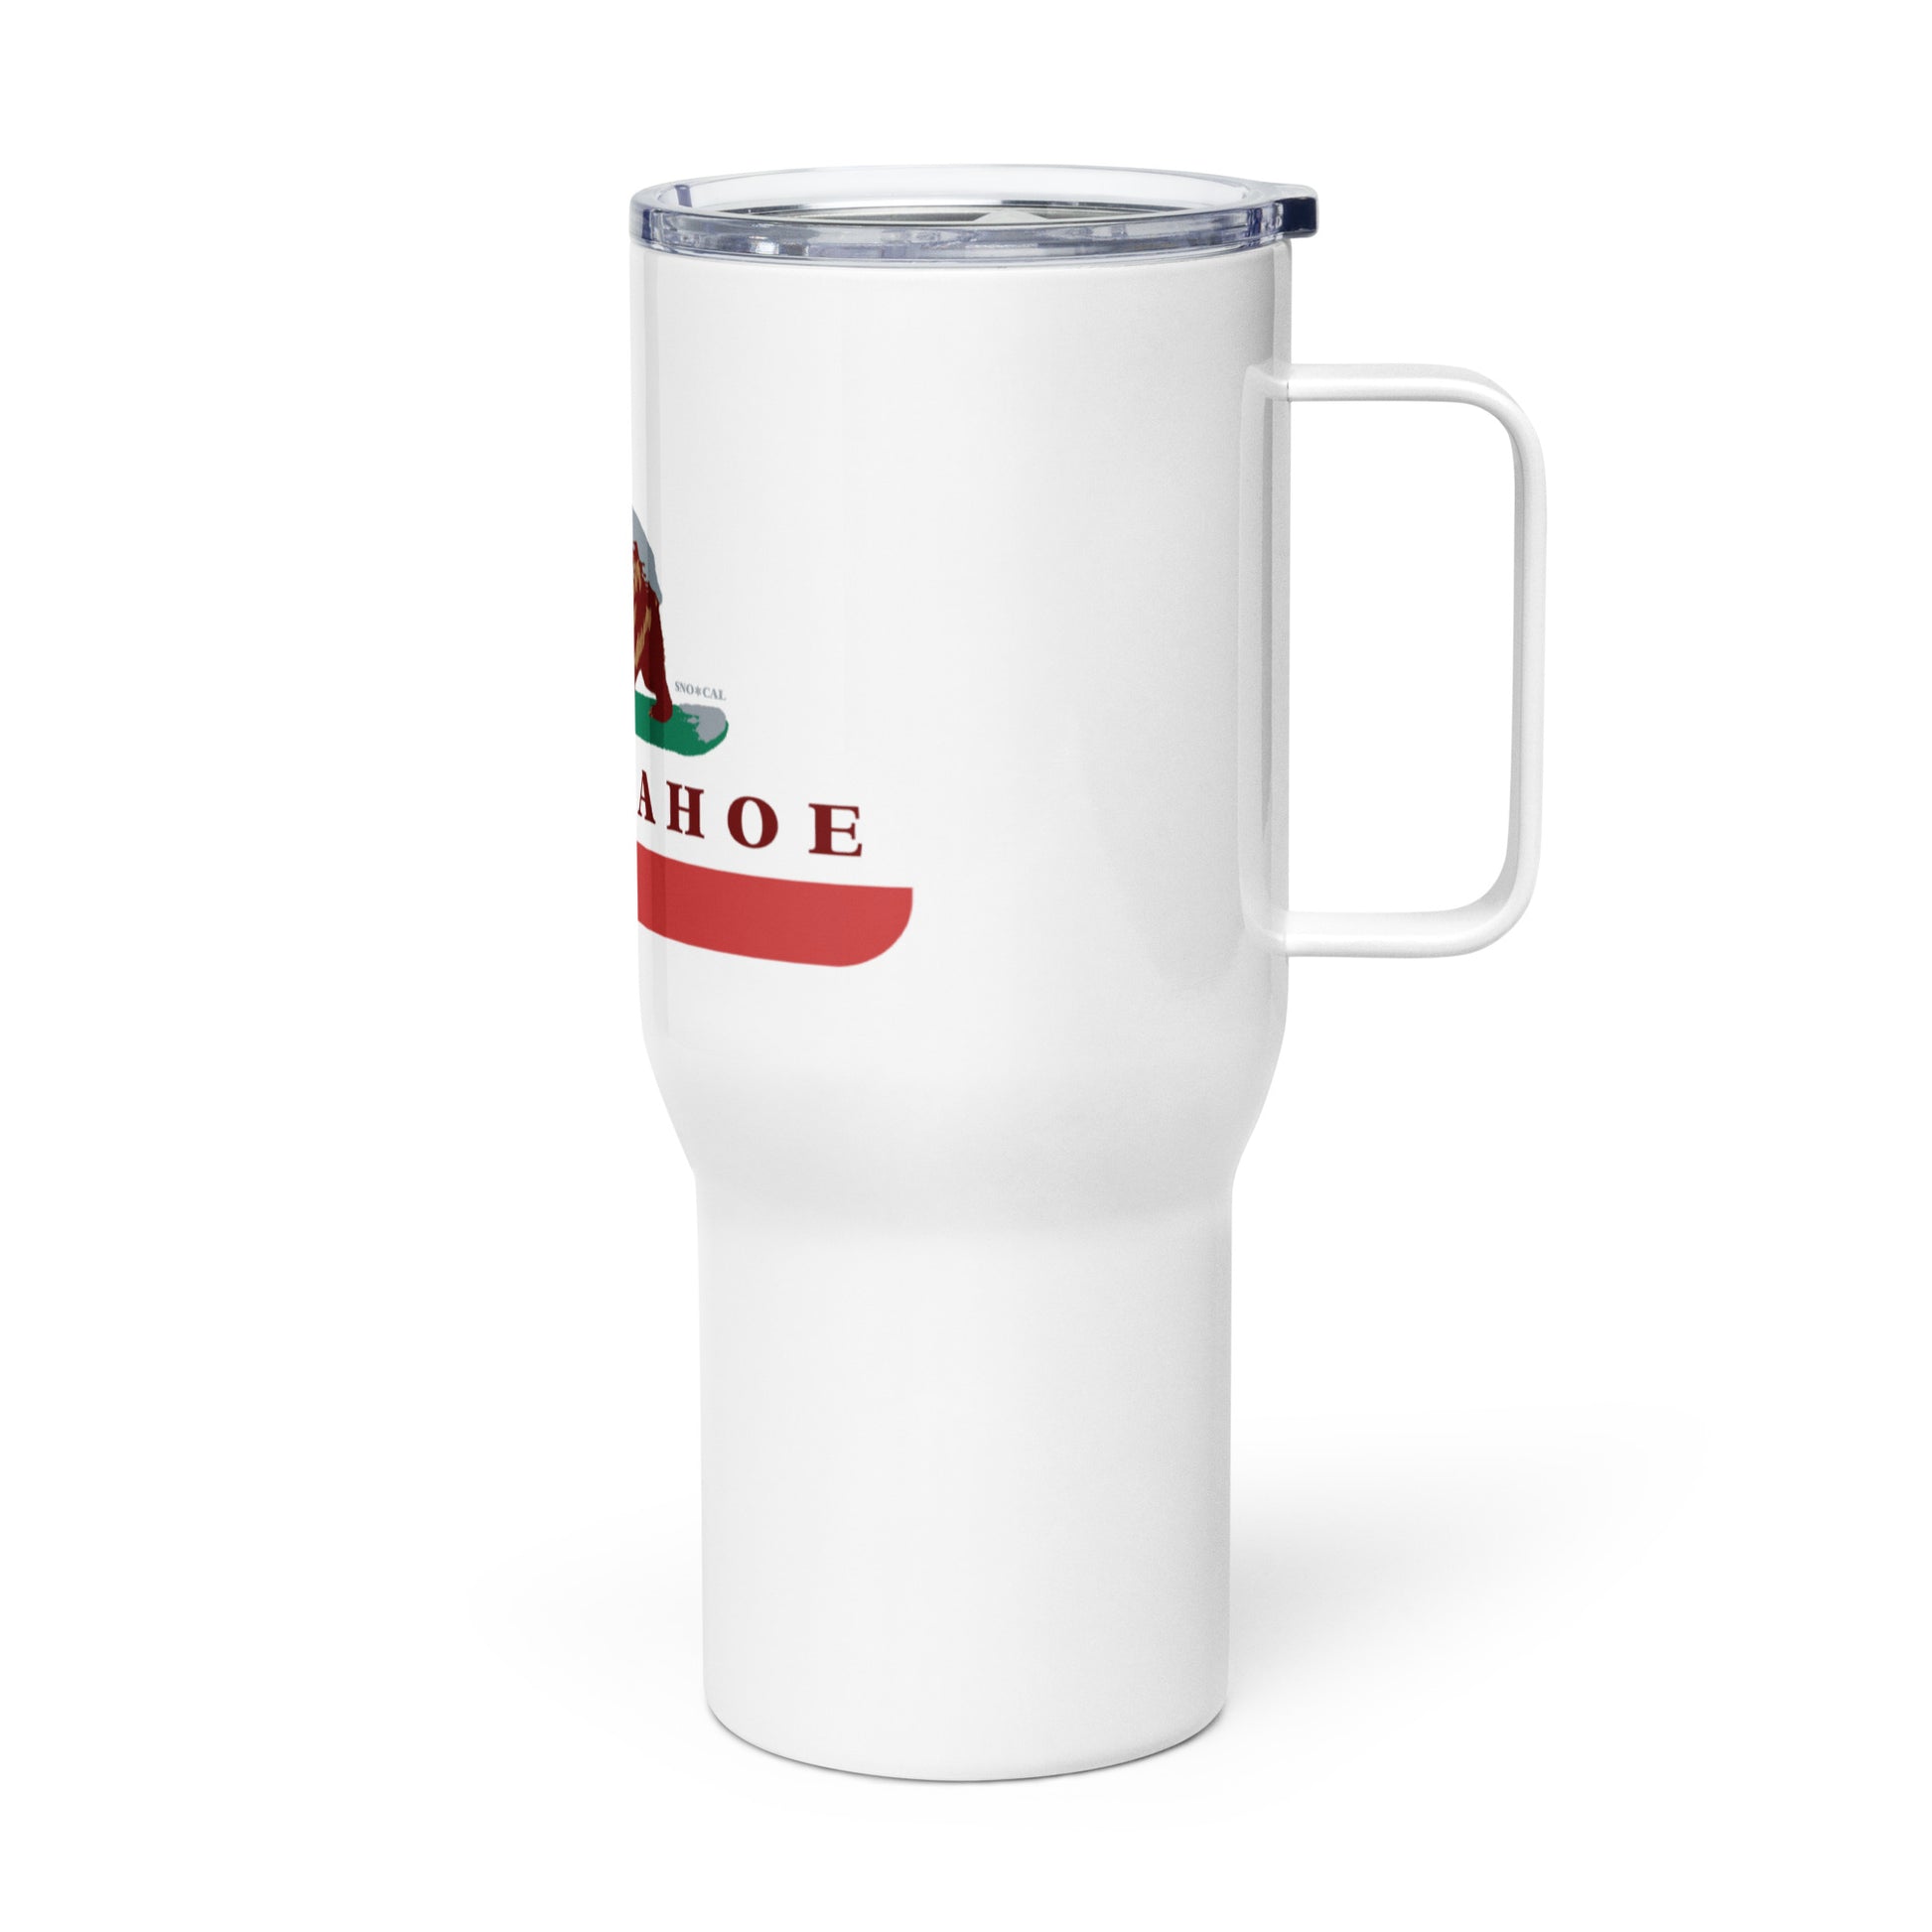 tahoe travel mug